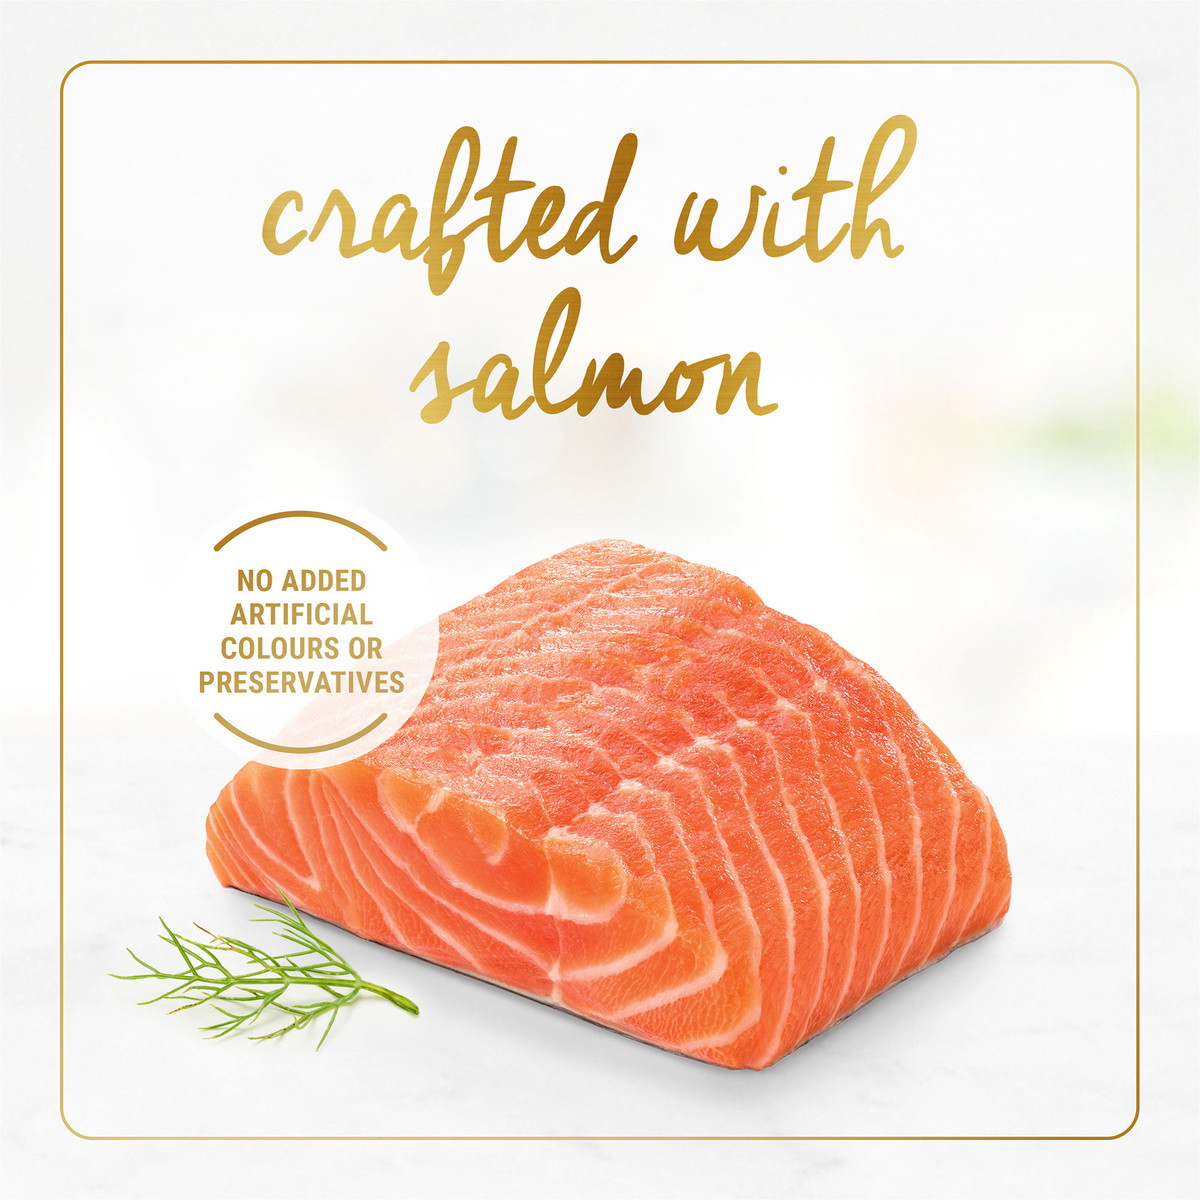 Purina Fancy Feast Grilled Salmon Feast In Gravy Cat Food 85 g